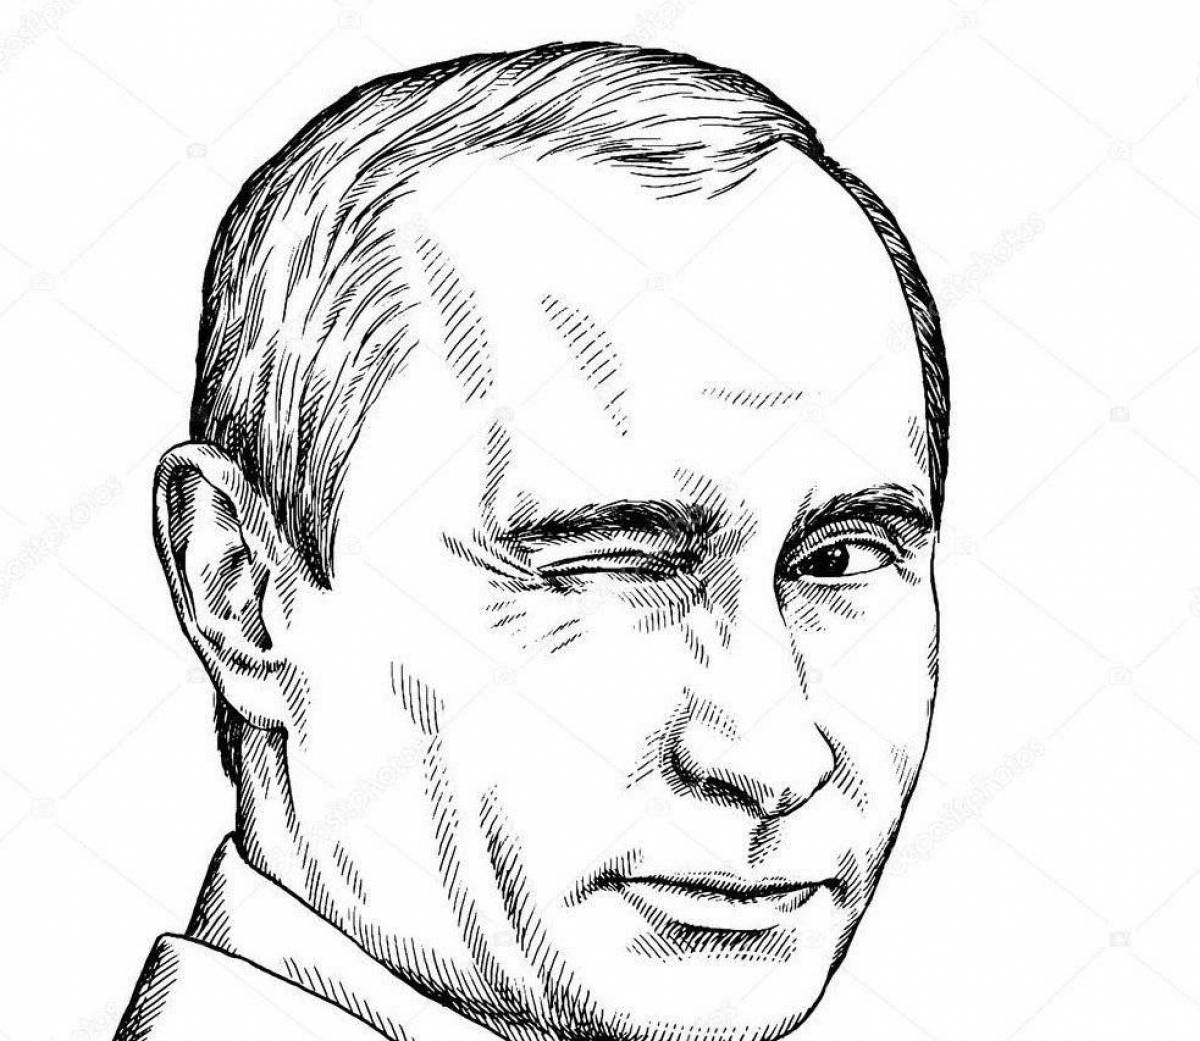 Putin's intriguing coloring book